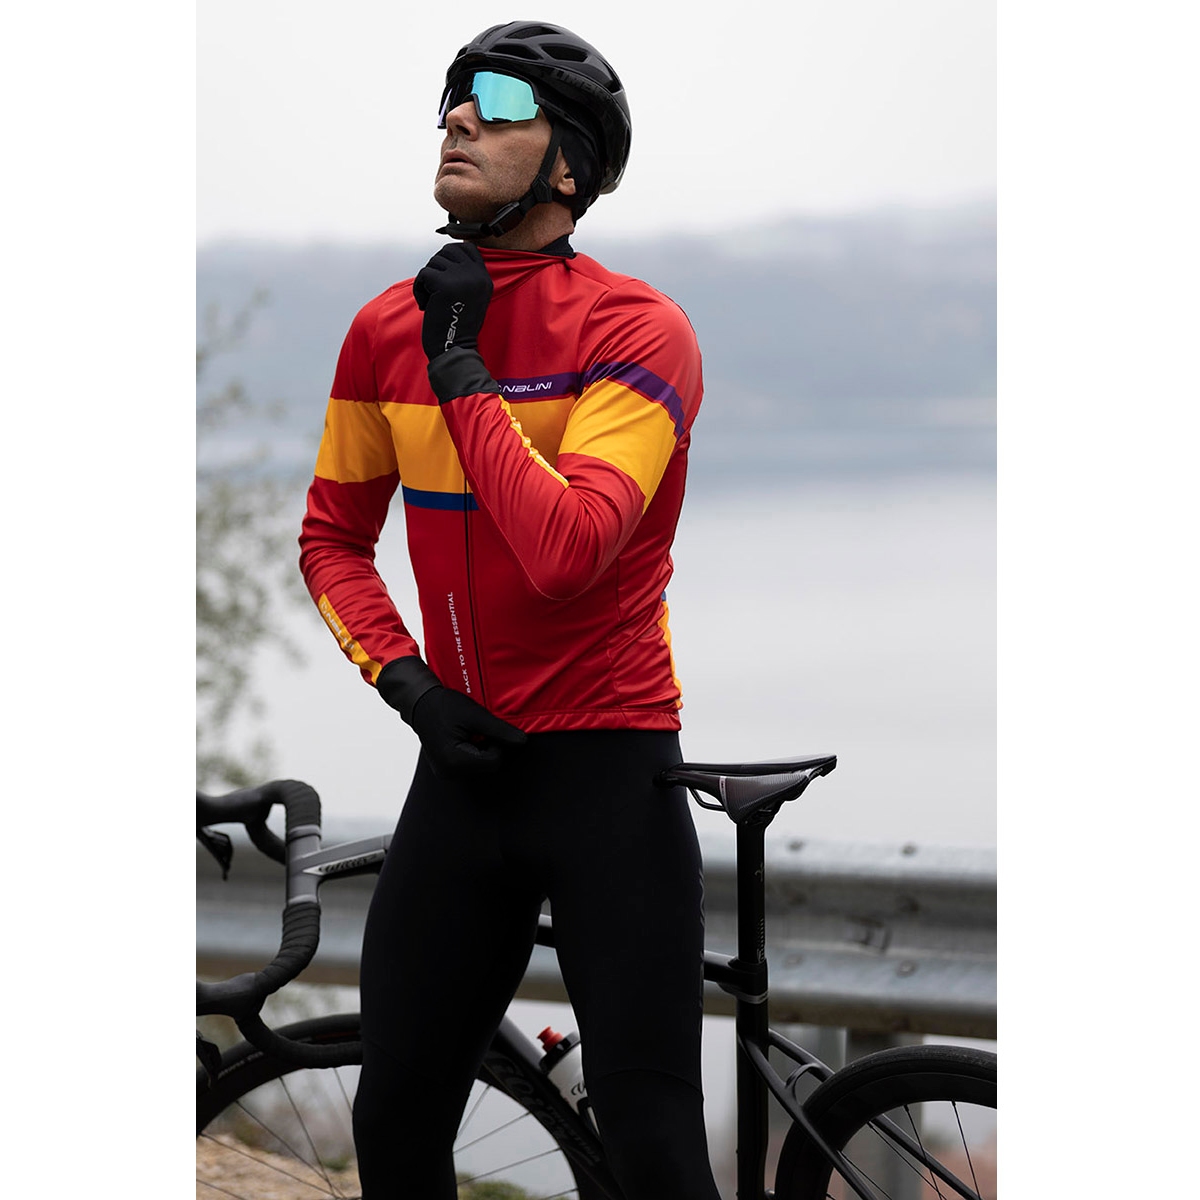 Nalini Chaleco Ciclismo Hombre - Warm - negro 4000